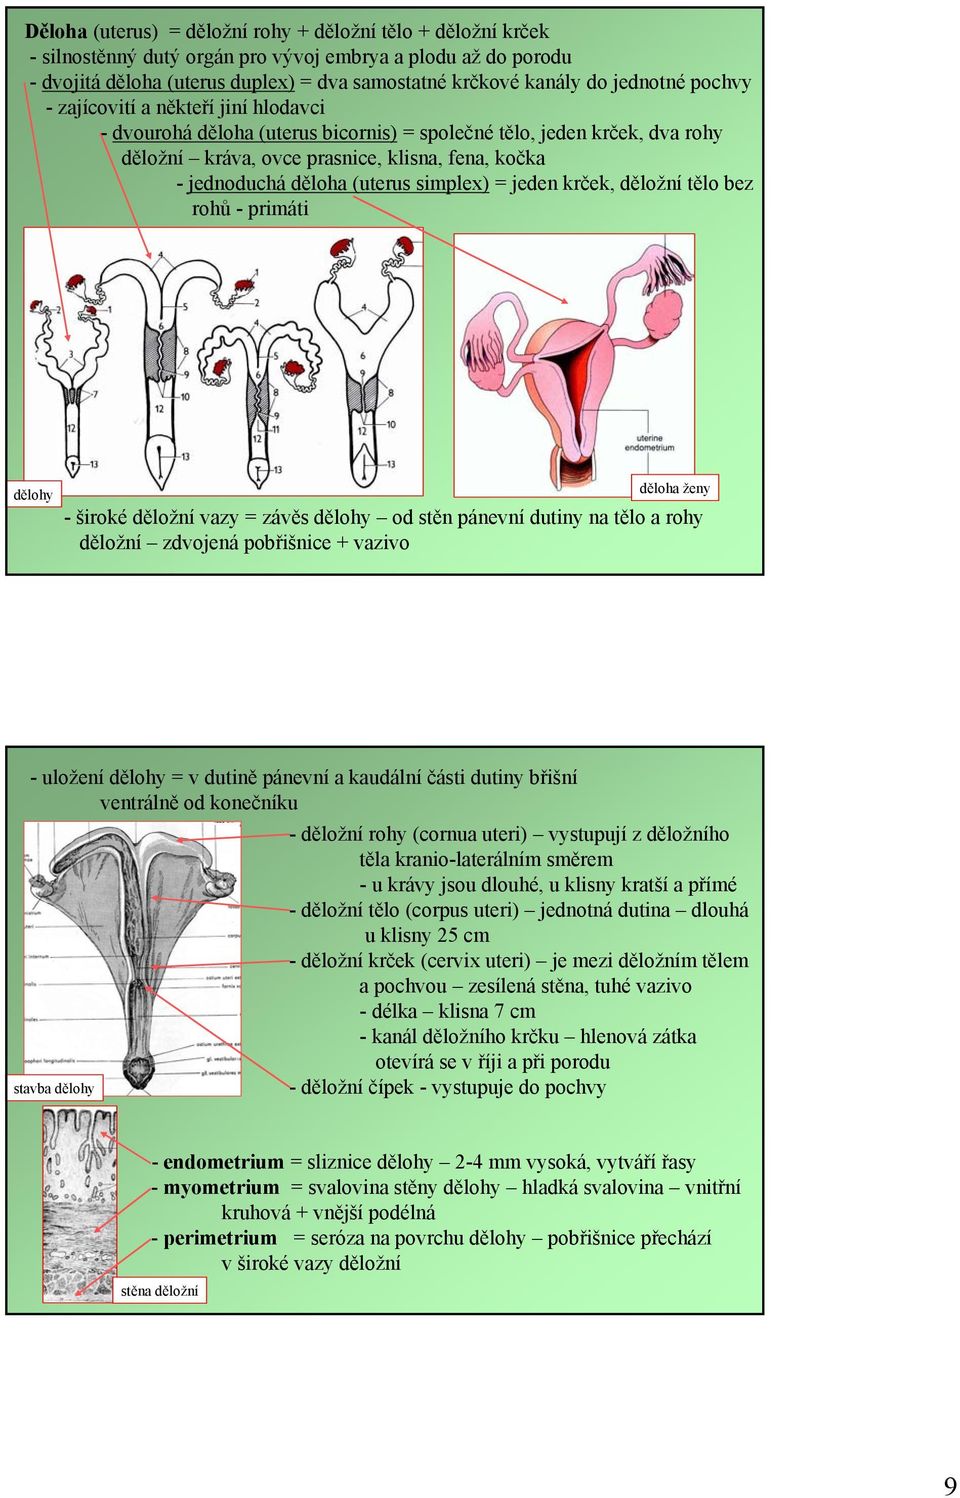 (uterus simplex) = jeden krček, děložní tělo bez rohů -primáti dělohy děloha ženy -širokéděložní vazy = závěs dělohy od stěn pánevní dutiny na tělo a rohy děložní zdvojená pobřišnice + vazivo